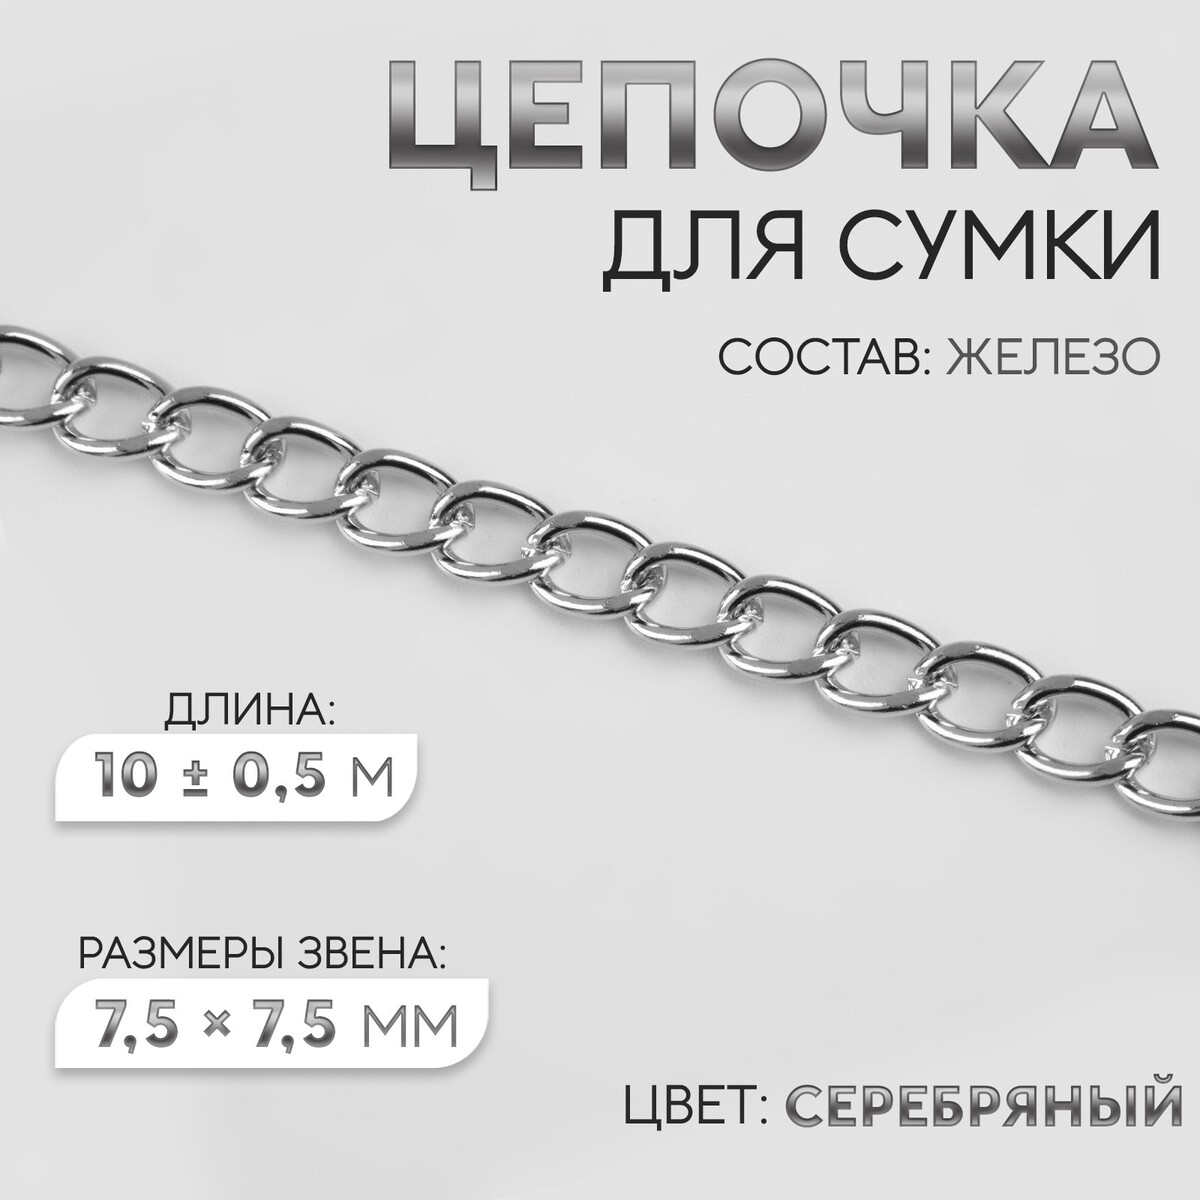 Цепочка для сумки, железная, 7,5 × 7,5 мм, 10 ± 0,5 м, цвет серебряный